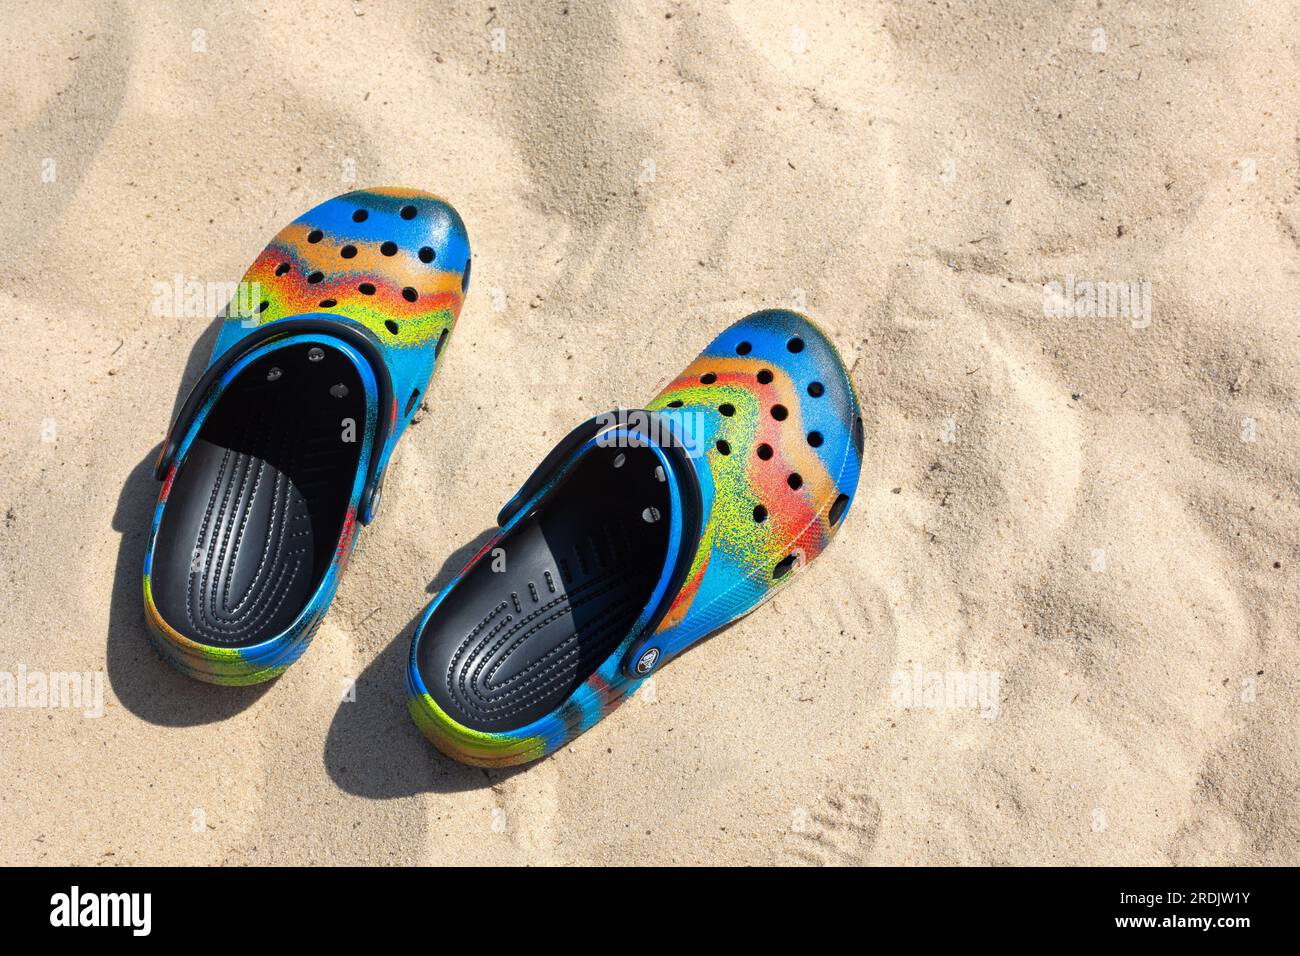 Ukraine, Kiew - Juli 04. 2022: Сolorful Crocs Schuhe am Strand, Urlaubshintergrund. Сolorful trendige Croc Strandschuhe. Urlaubskonzept. Fahrbewegung V Stockfoto